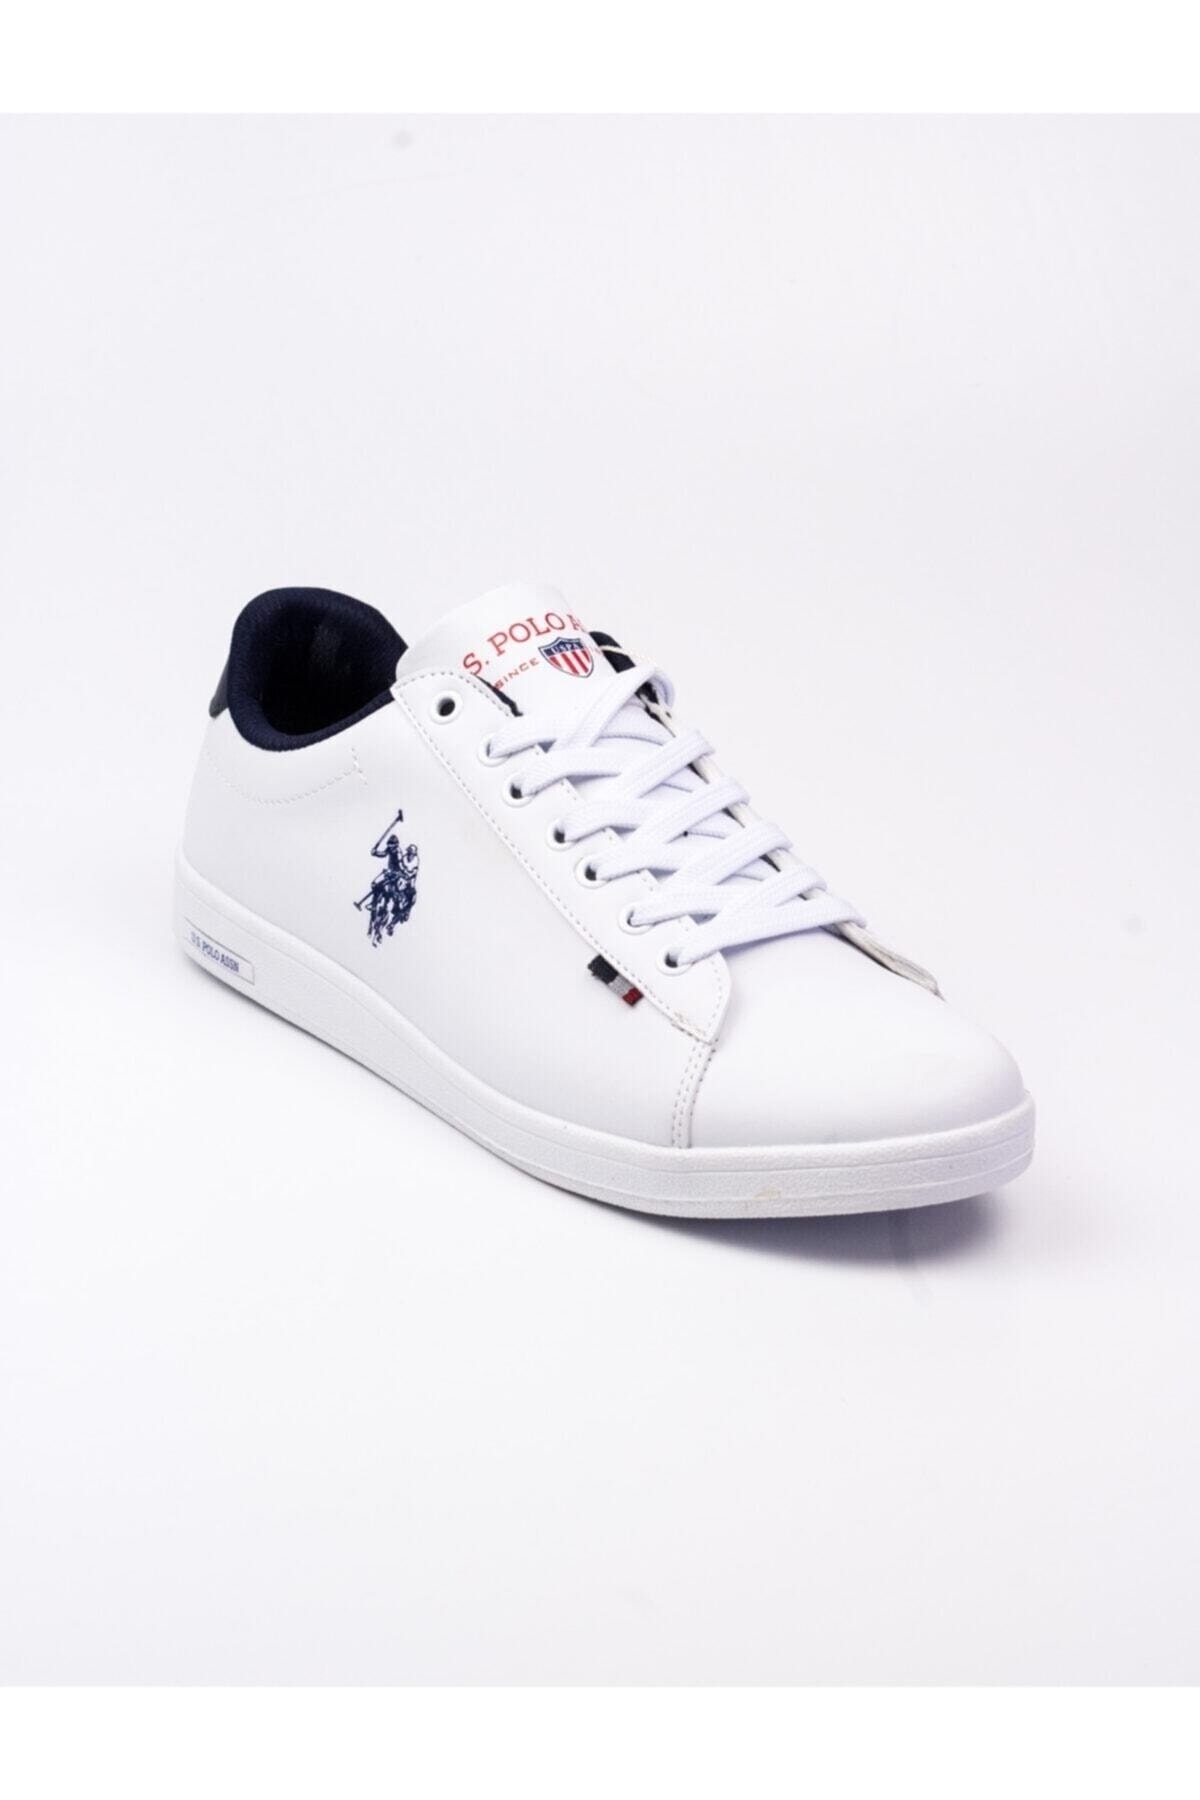 U.S. Polo Assn. Dhm Beyaz Erkek Sneaker Ayakkabı 10054897